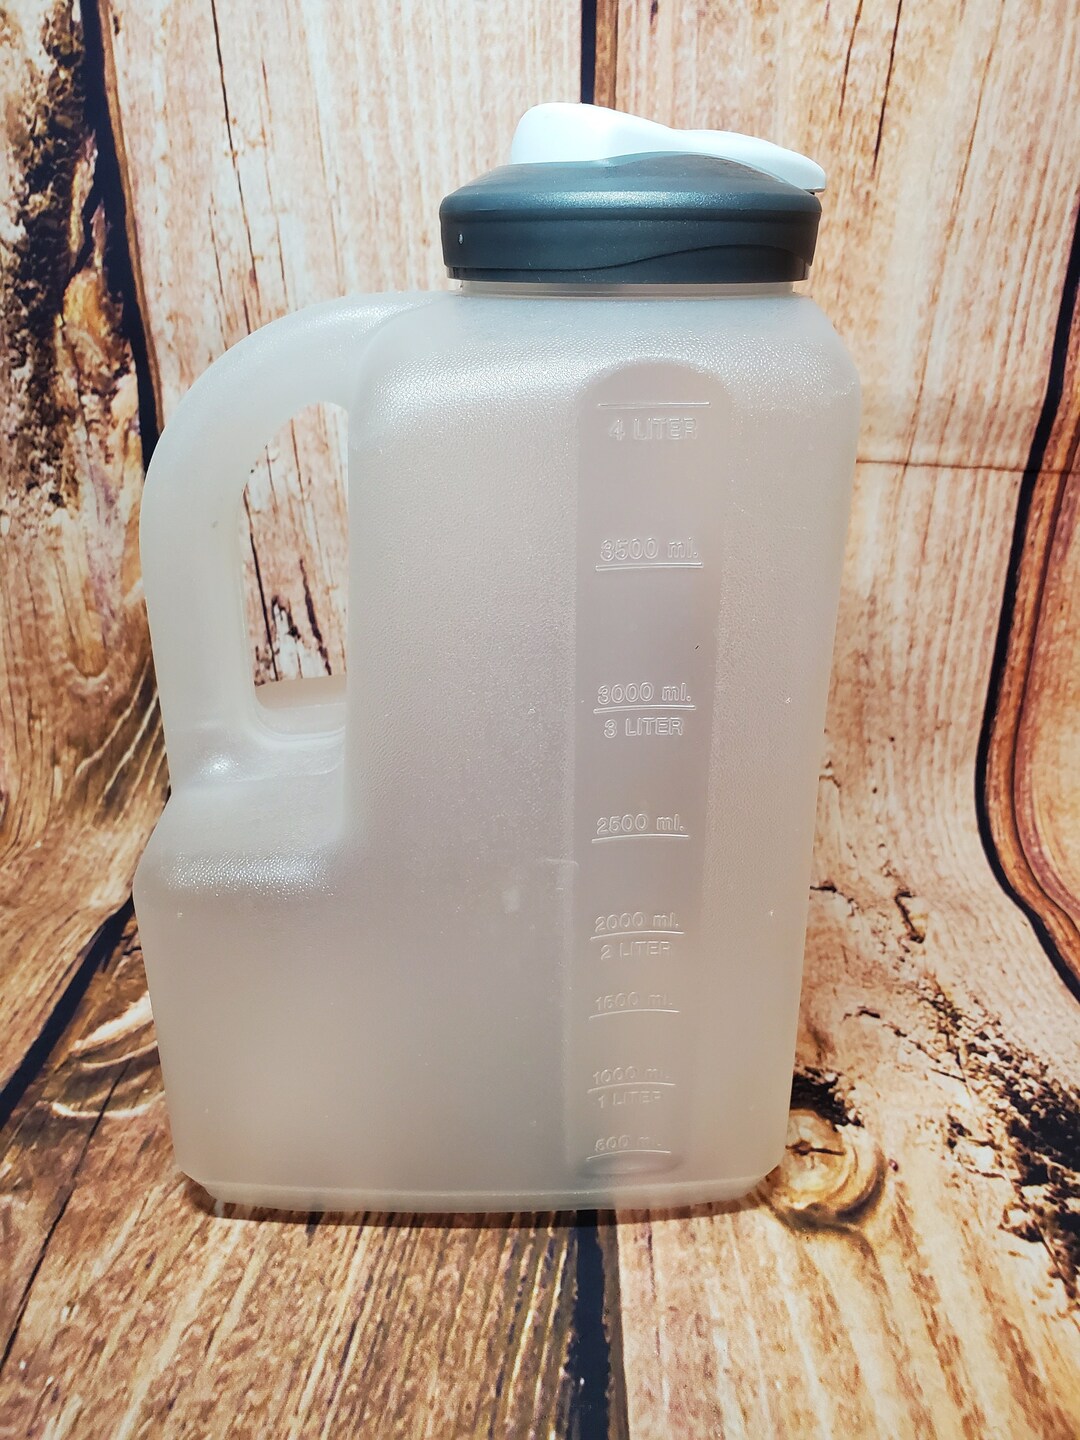 Rubbermaid Servin Saver 4 Quart 4 L Juice/Beverage Pitcher Container 0231